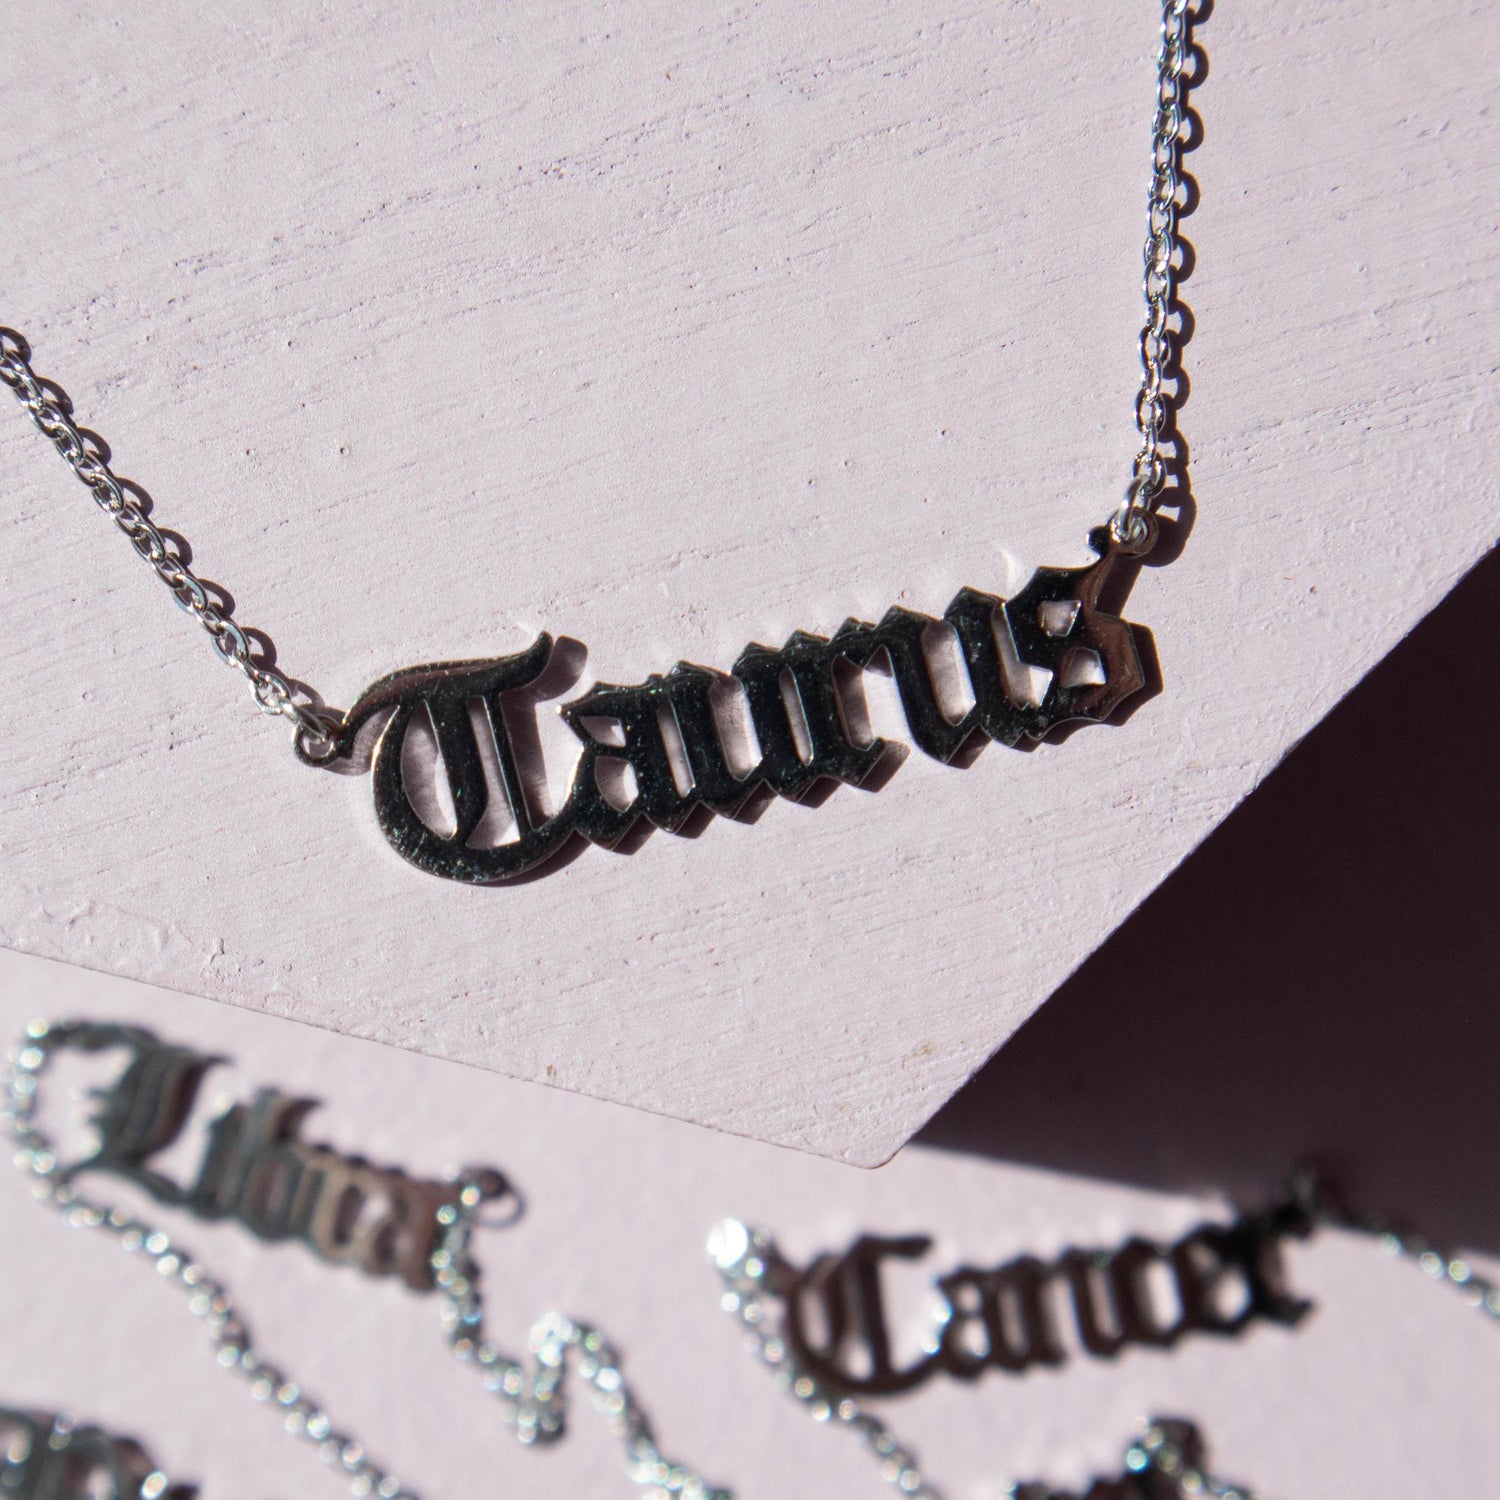 taurus, taurus necklace, taurus chain, taurus jewelry, taurus script necklace, zodiac sign, zodiac sign necklace, zodiac jewelry